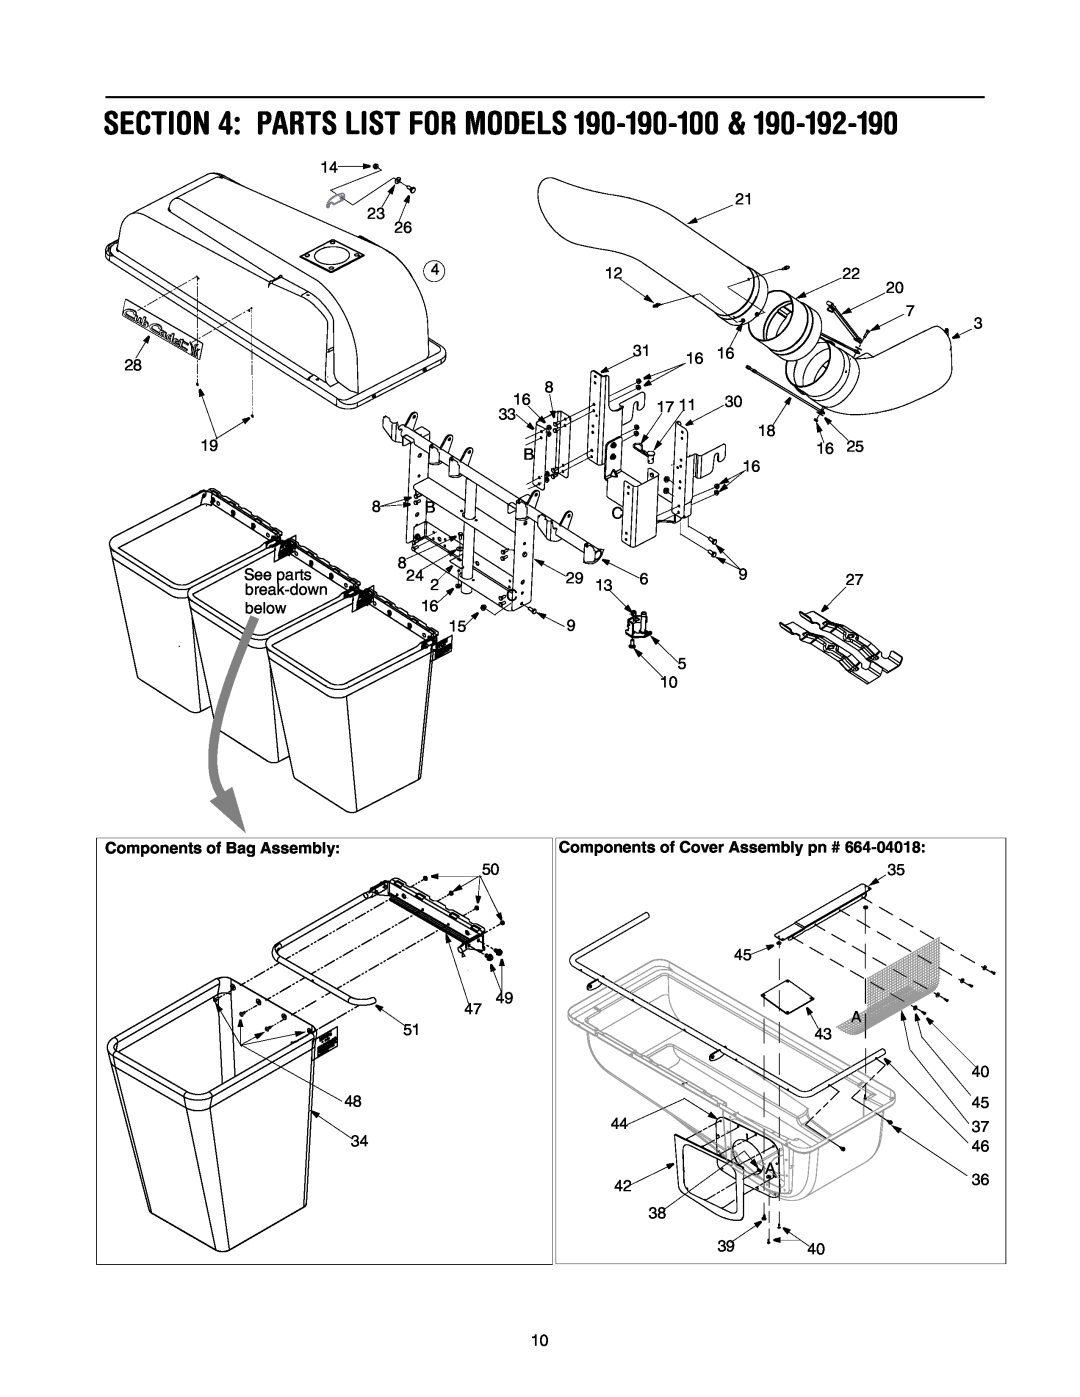 Cub Cadet 190-192-190, 190-190-100 Parts List For Models, Components of Bag Assembly, Components of Cover Assembly pn # 